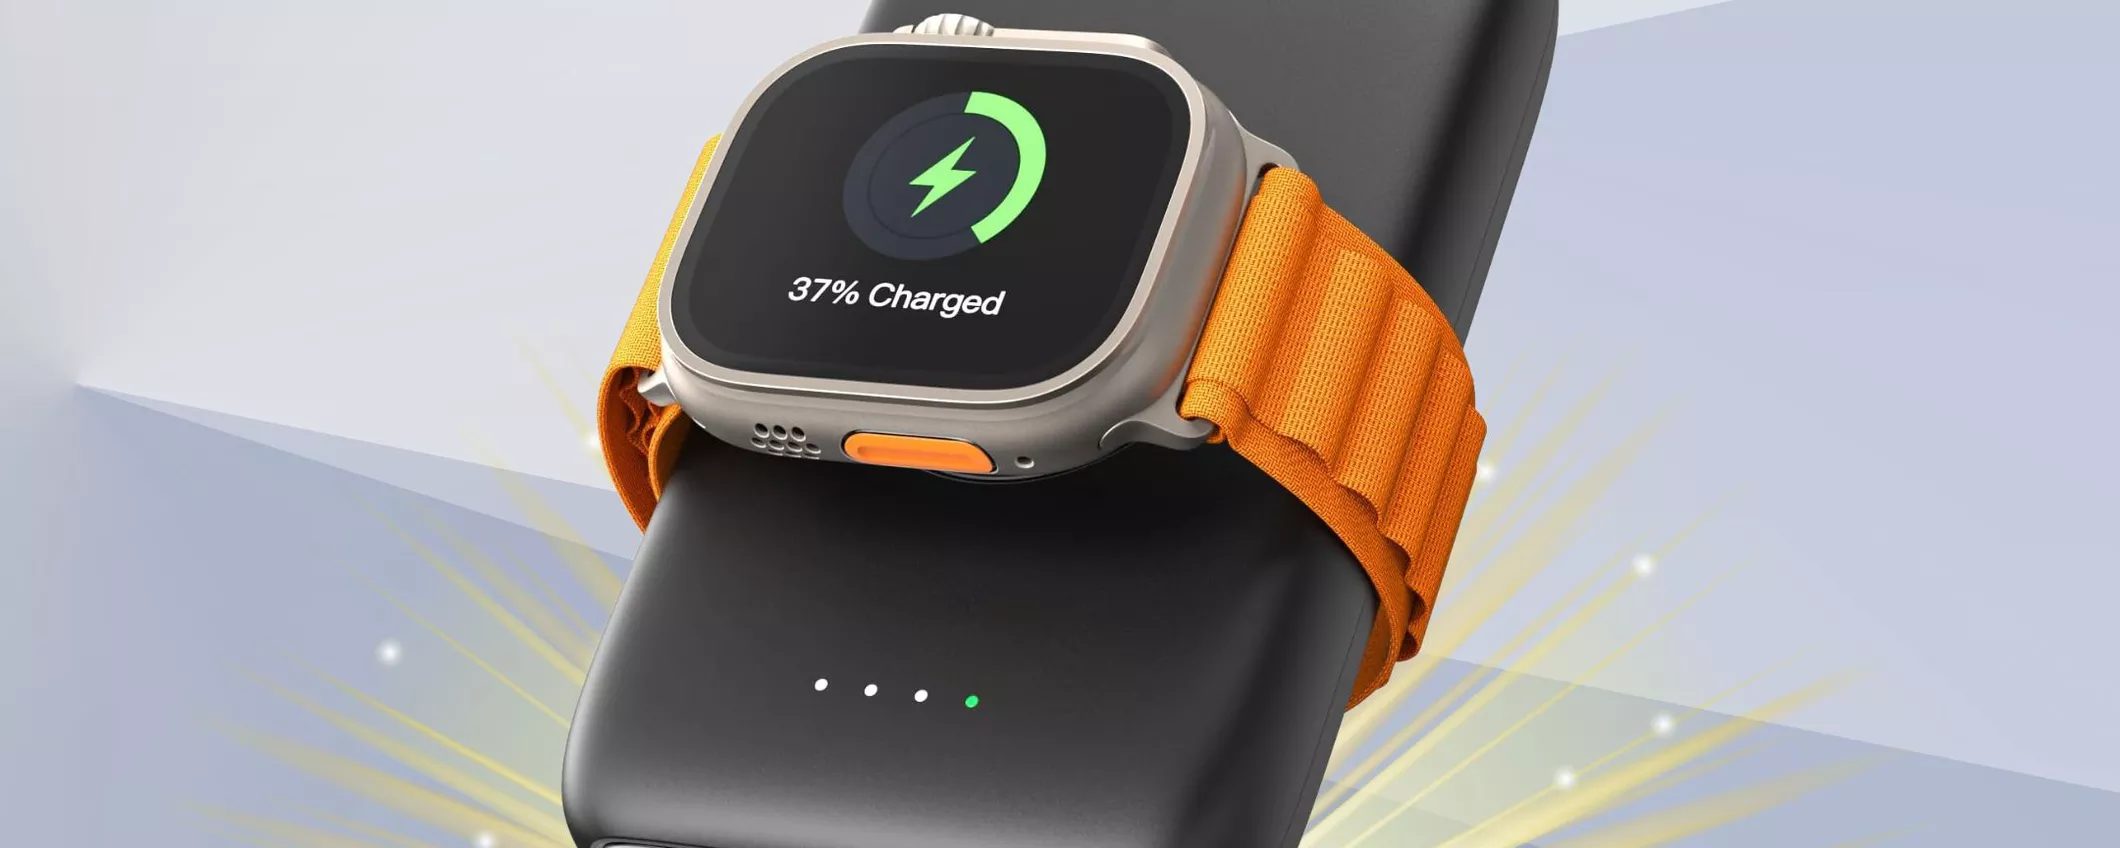 Caricatore per Apple Watch: lo porti OVUNQUE e oggi costa 40% in meno!